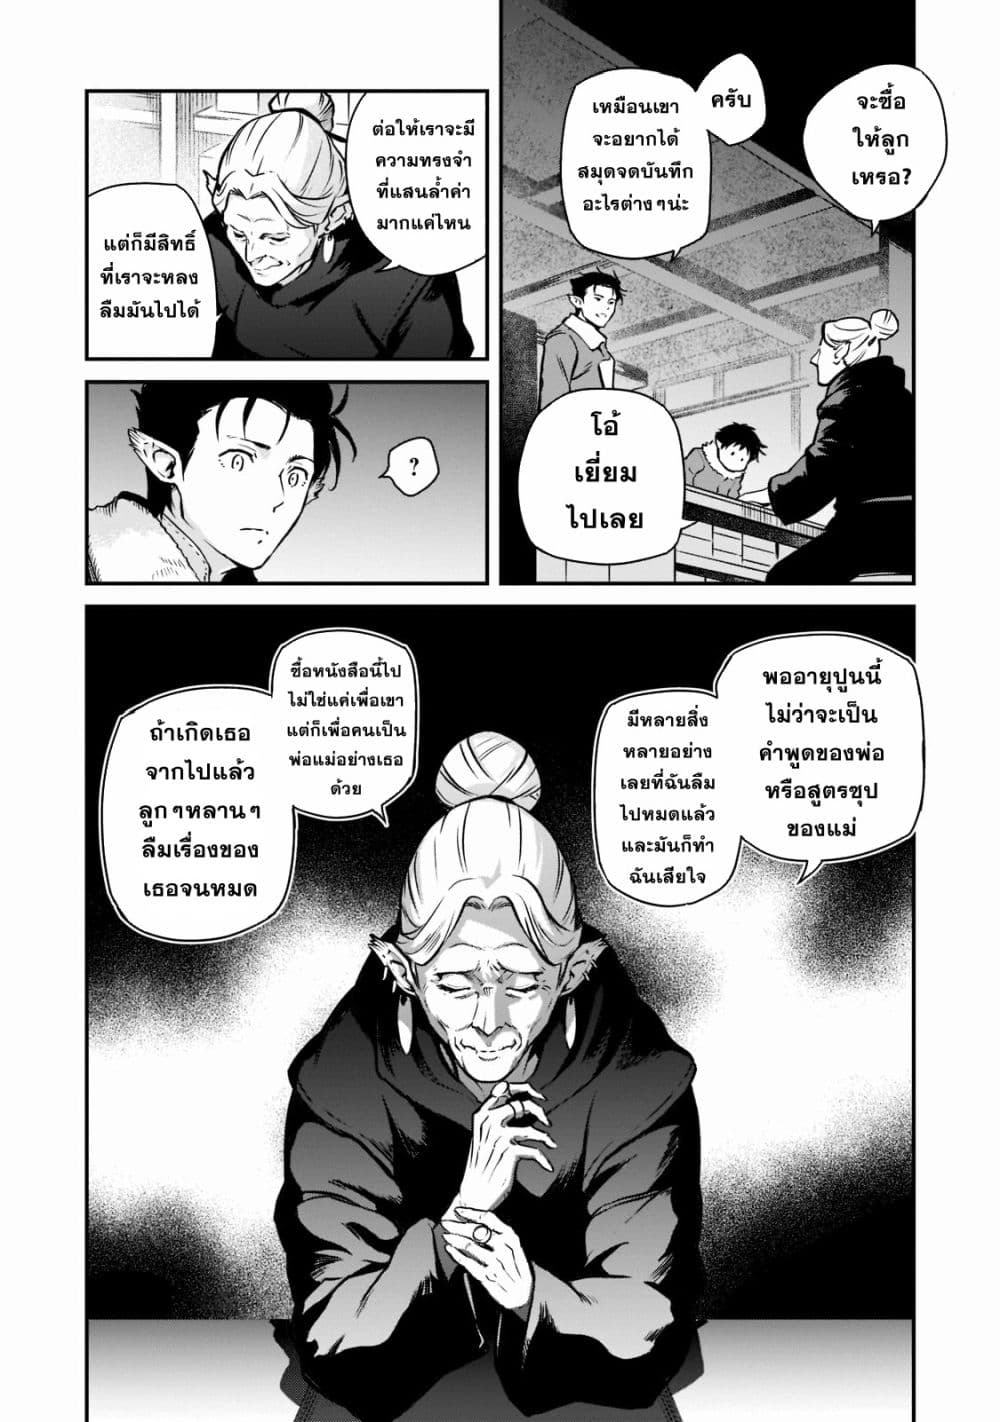 Horobi no Kuni no Seifukusha ตอนที่ 2 (22)